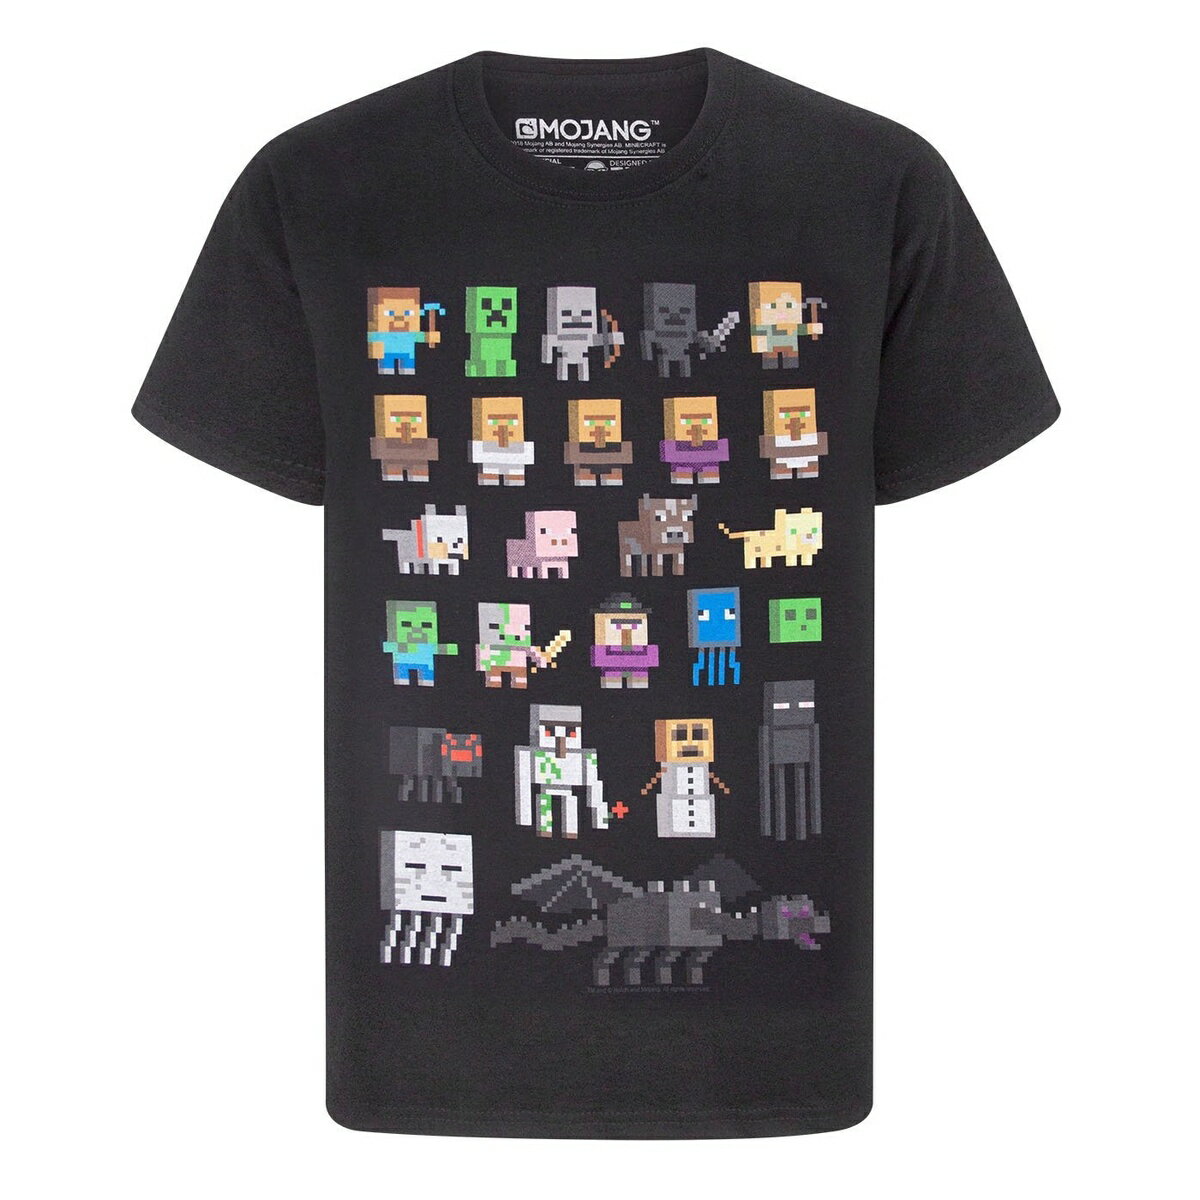 マインクラフト Minecraft オフィシャル商品 キッズ・子供 ボーイズ Sprites Tシャツ 半袖 カットソー トップス 【海外通販】